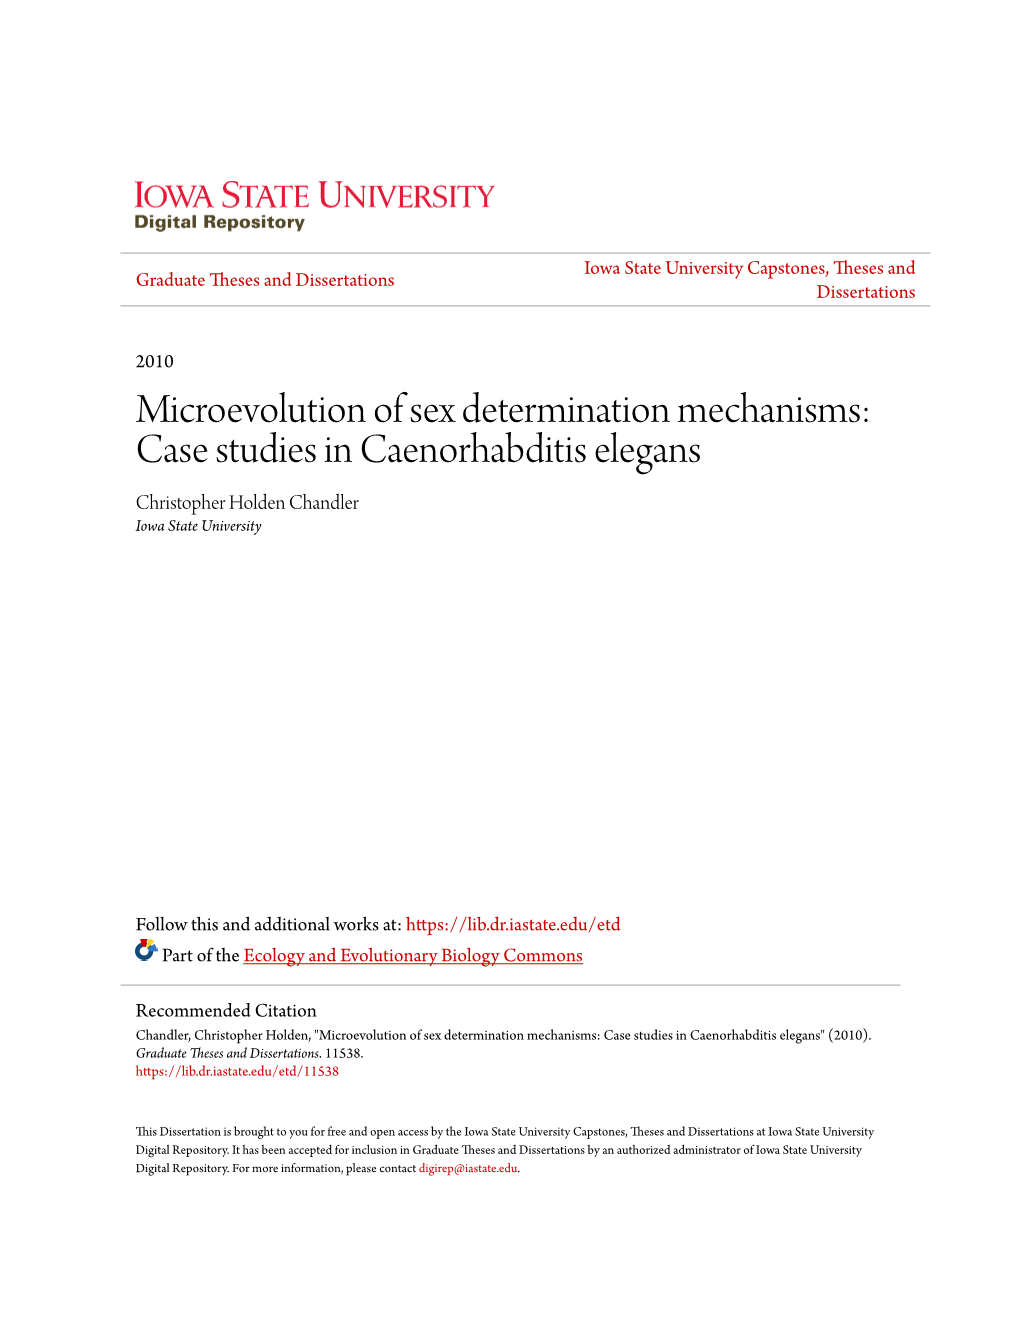 Microevolution of Sex Determination Mechanisms: Case Studies in Caenorhabditis Elegans Christopher Holden Chandler Iowa State University